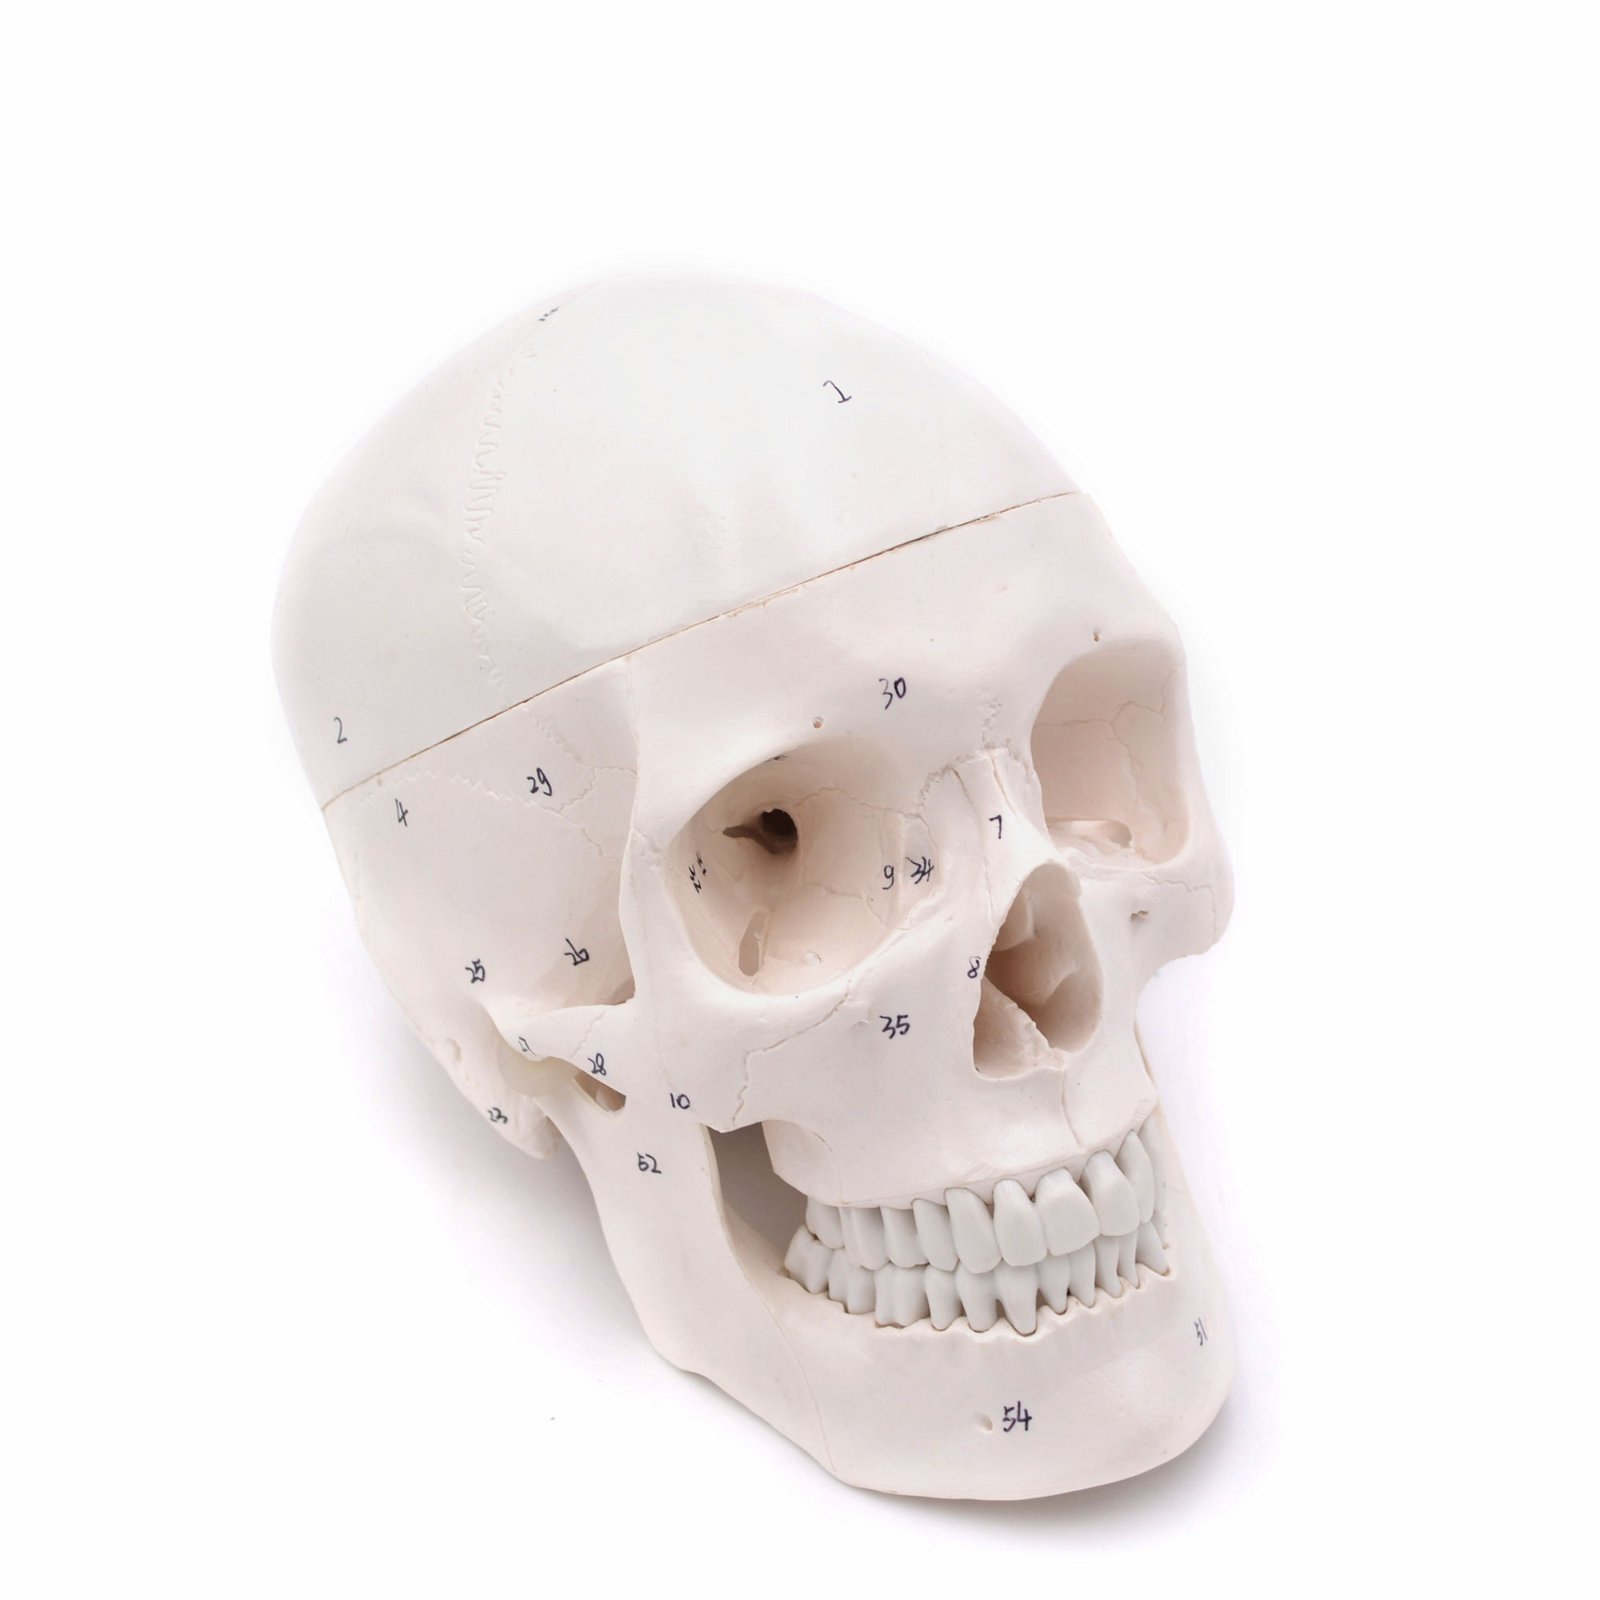 Craniu uman artificial model didactic medical 3 parti mulaj anatomie medicina PVC plastic